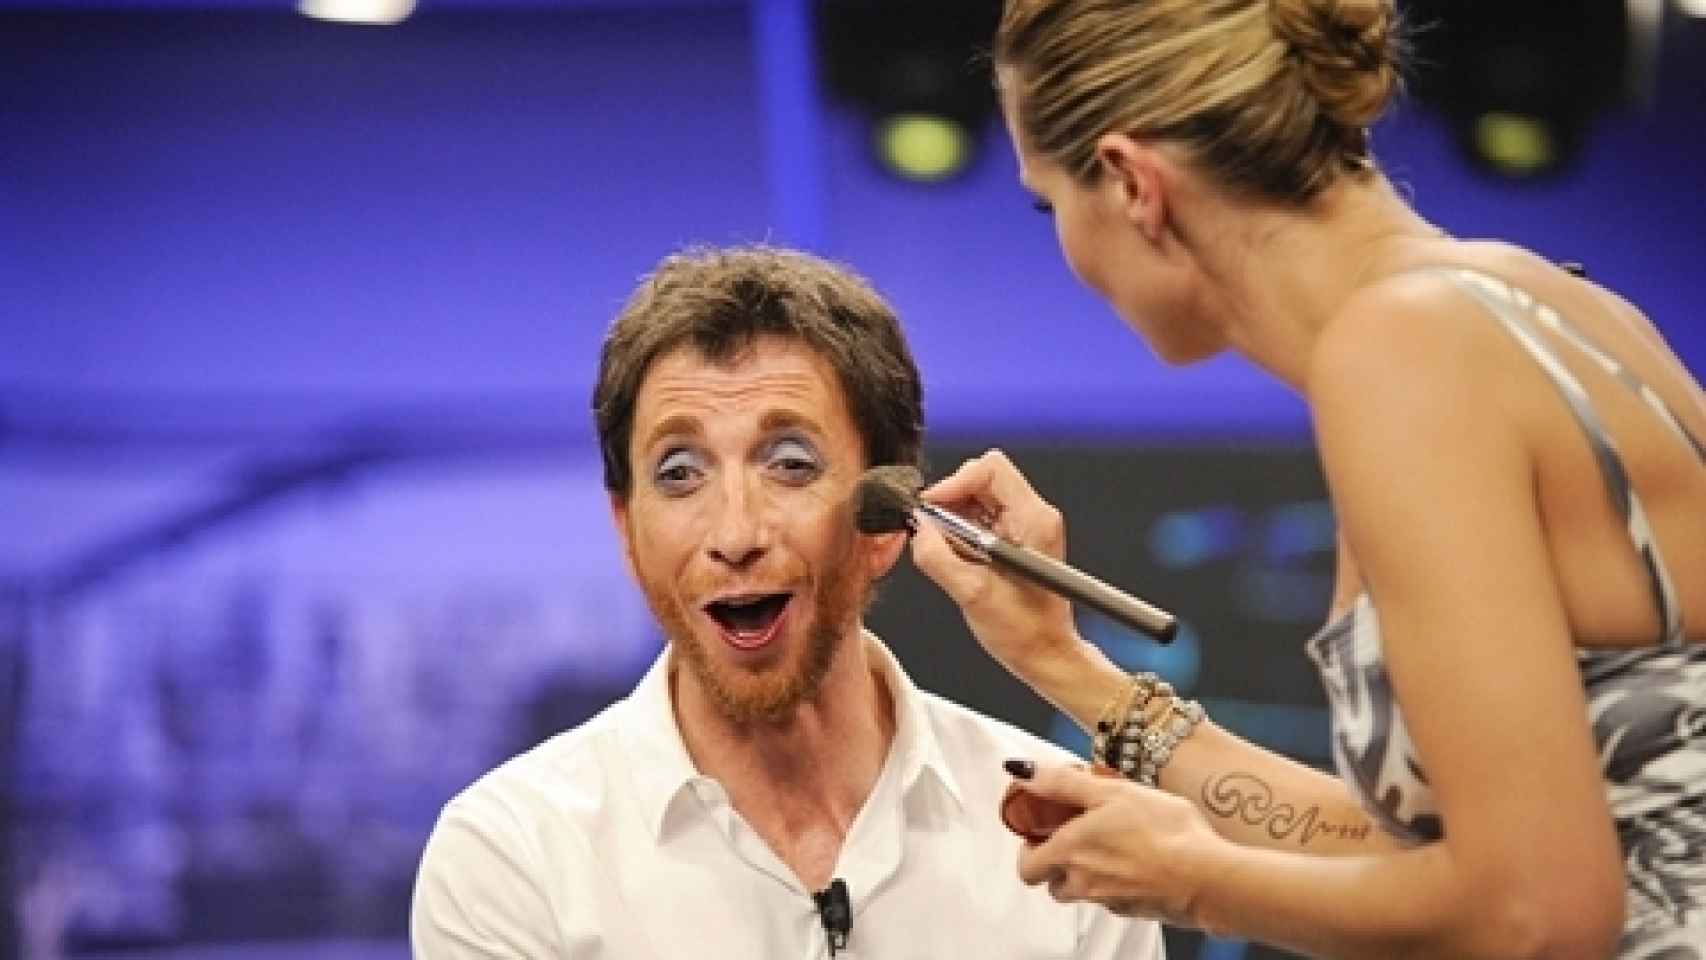 Pablo Motos siendo maquillado por Heidi Klum durante un programa